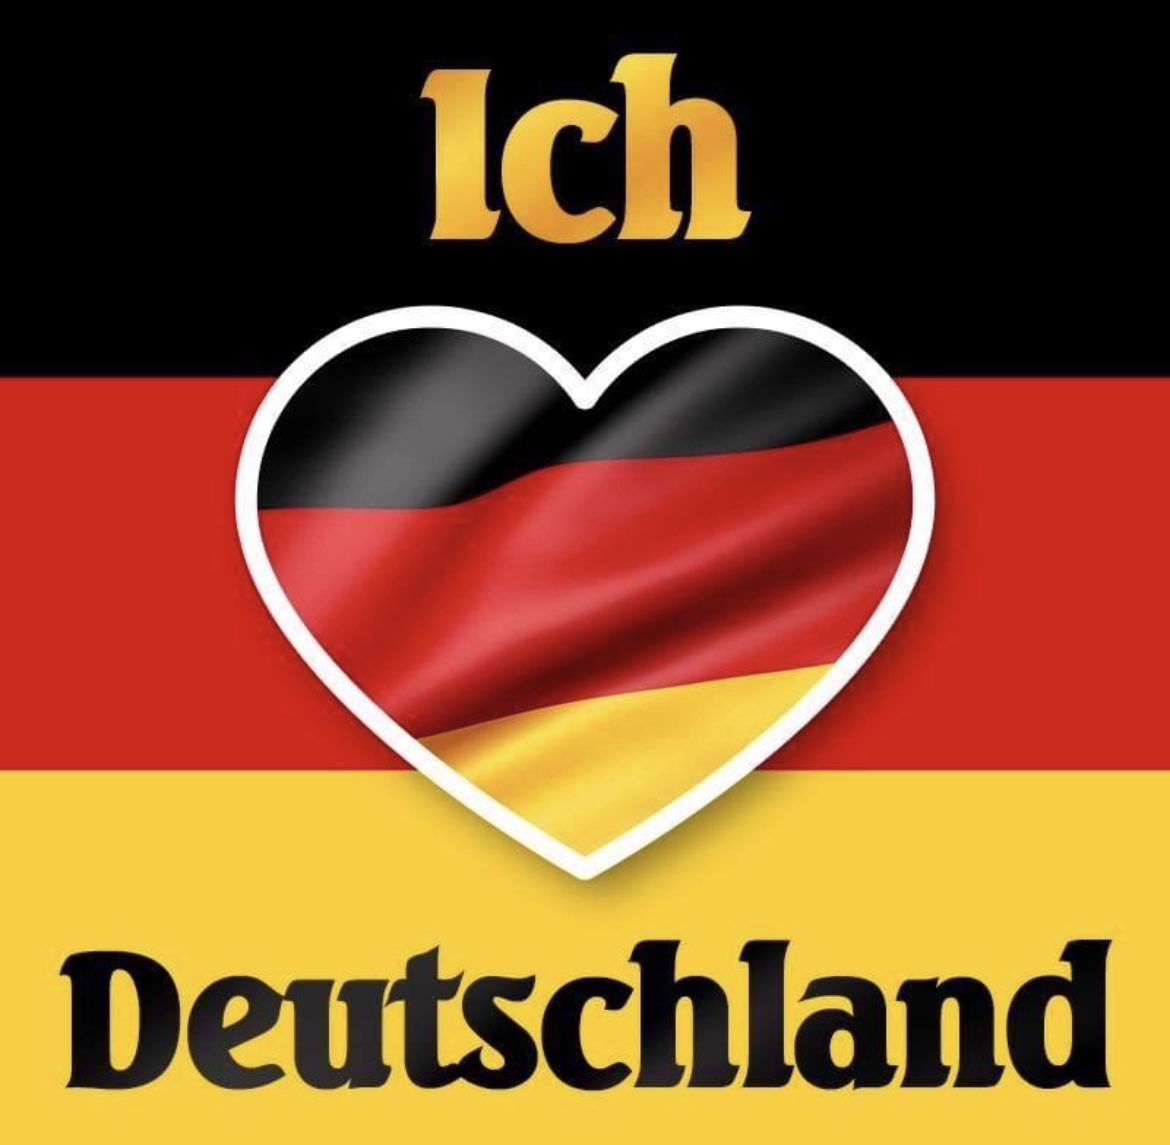 +++ VERNETZUNGSTWEET +++
für alle Patrioten die Deutschland lieben. Lasst uns alle gegenseitig folgen & zusammenhalten 🥰

Eskaliert mal richtig mit dem Liken & Retweeten, Zusammenhalt ist mega wichtig, vorallem heutzutage 🇩🇪❤️

🖤❤️💛 Ich folge auch ALLEN zurück, du auch?